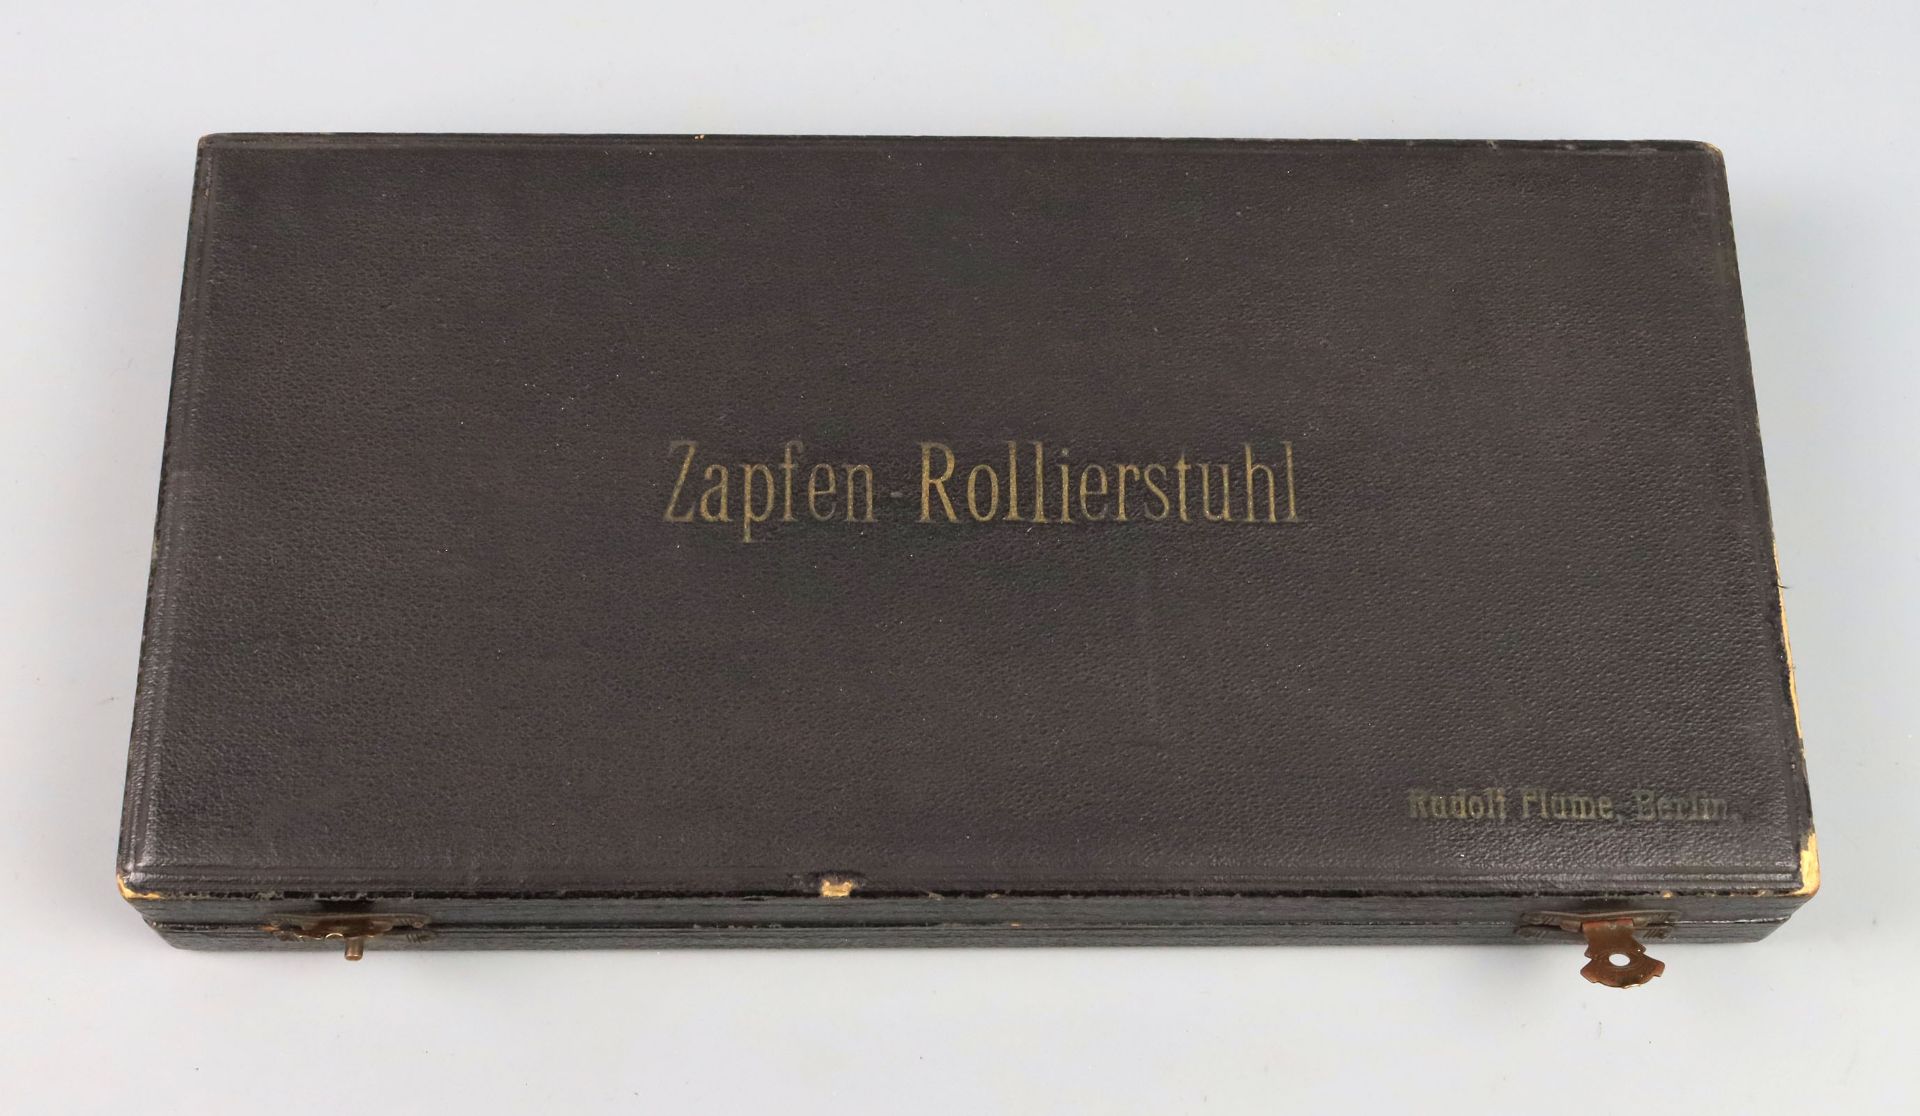 Zapfen-Rollierstuhl im Etui - Image 2 of 2